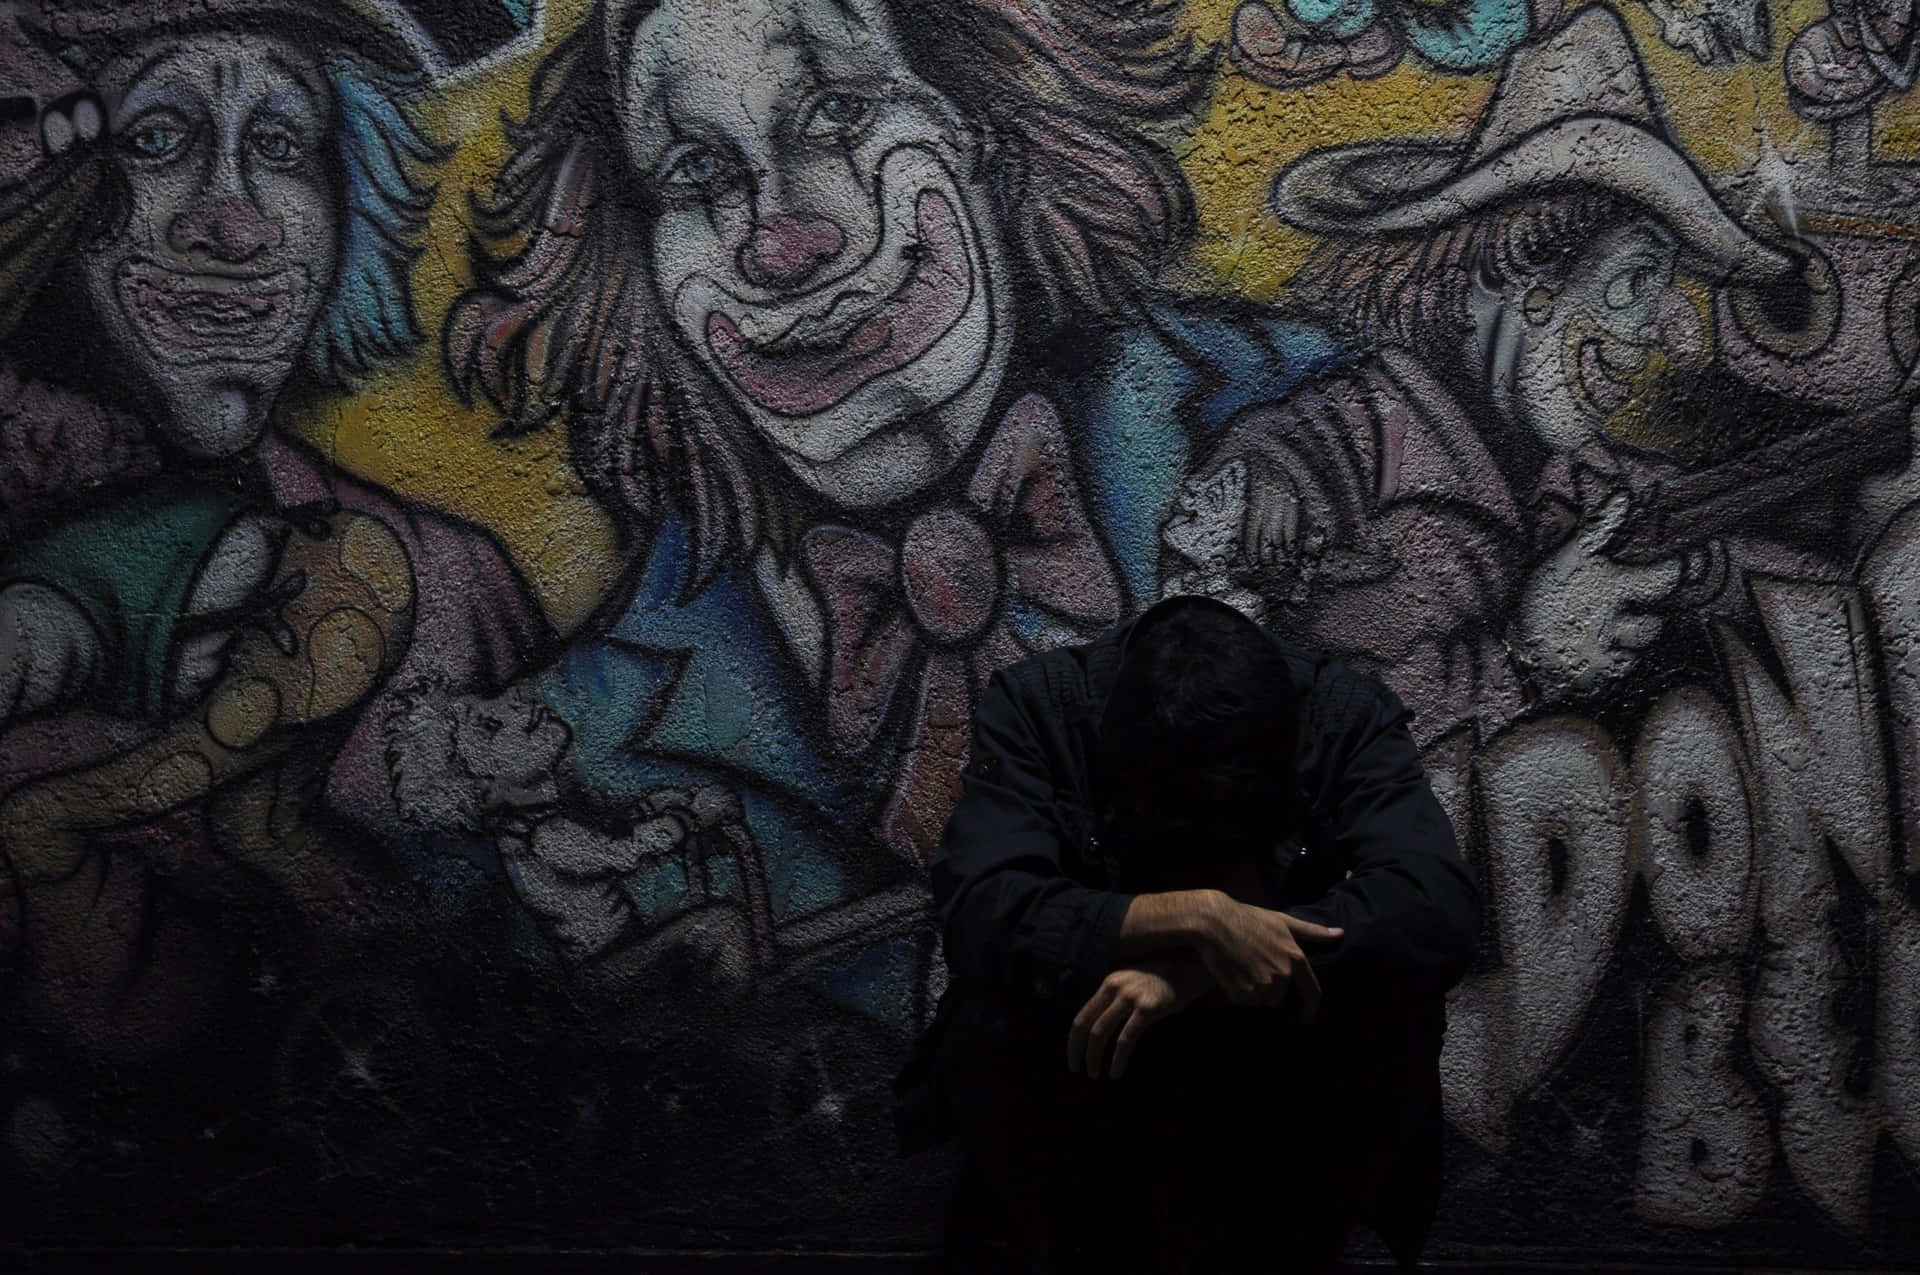 Graffiti Wall Art Of Sad Clowns Background